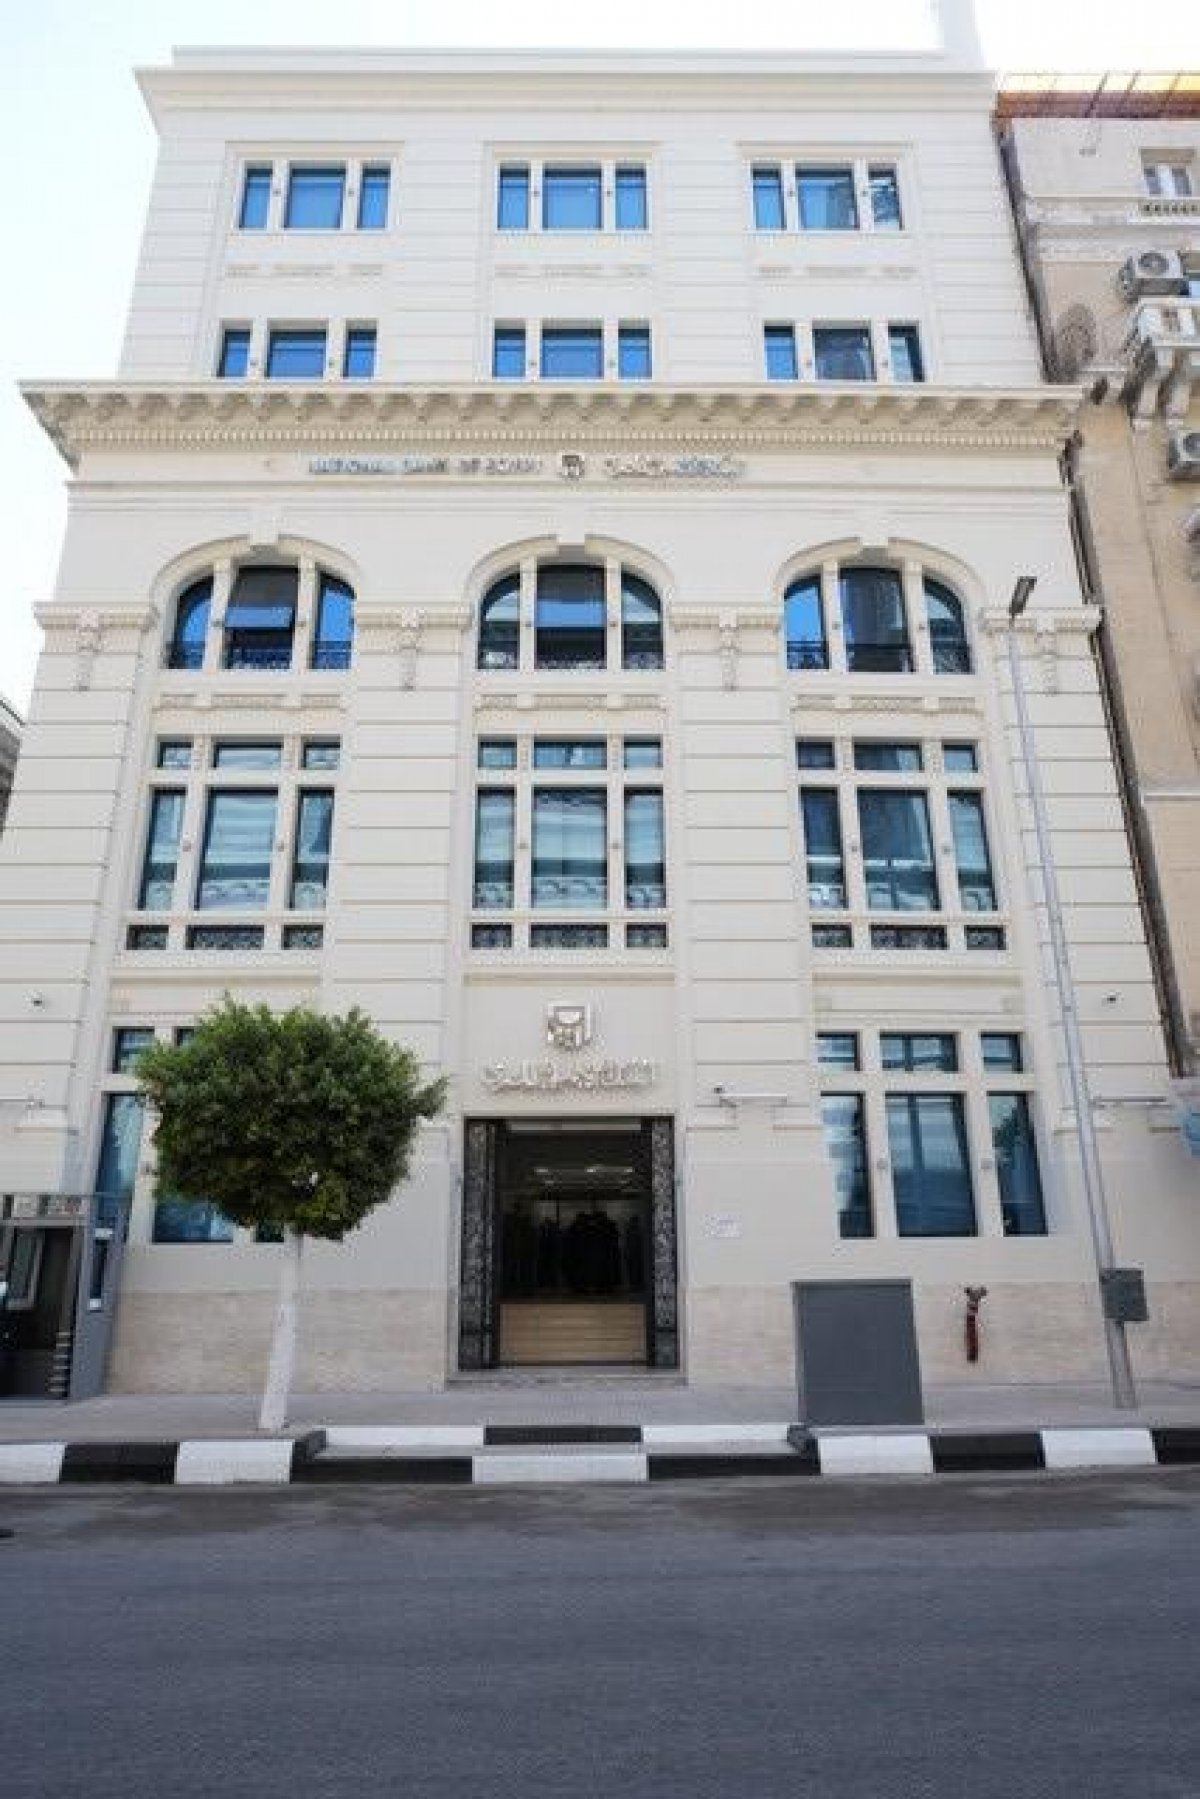 بعد تطويره وفقا لأحدث الأساليب العالمية في تطوير المباني التراثية، البنك الأهلي المصري يفتتح فرعه " محمد فريد "